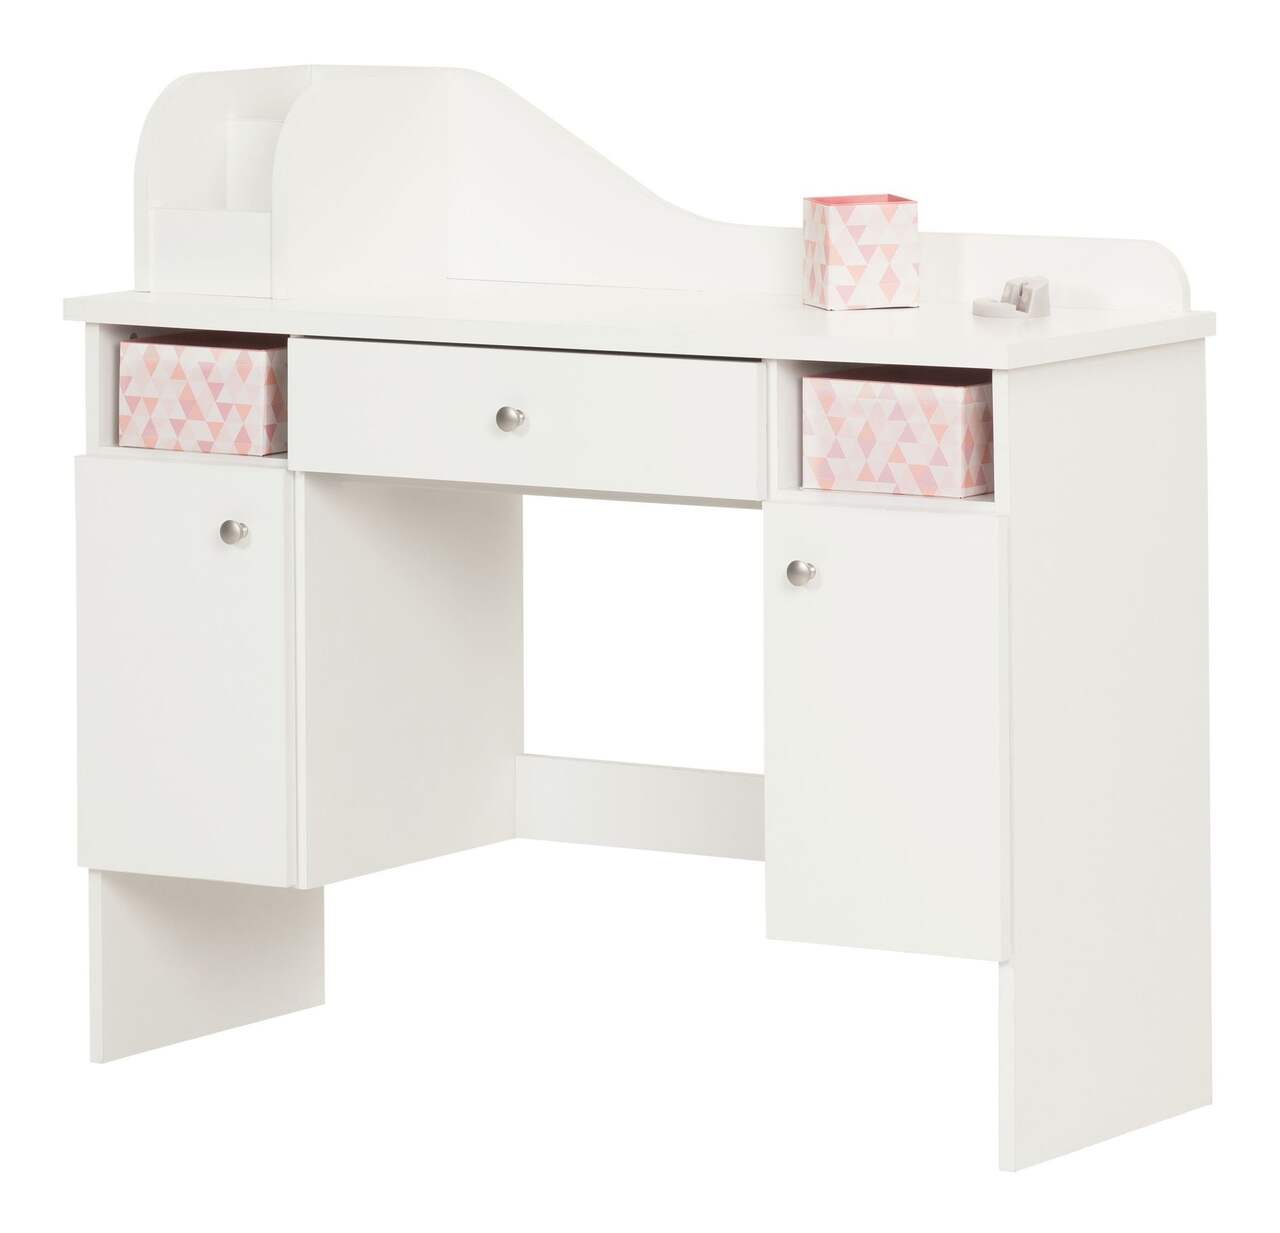 COIFFEUSE couleur blanche, meuble complet avec accessoires